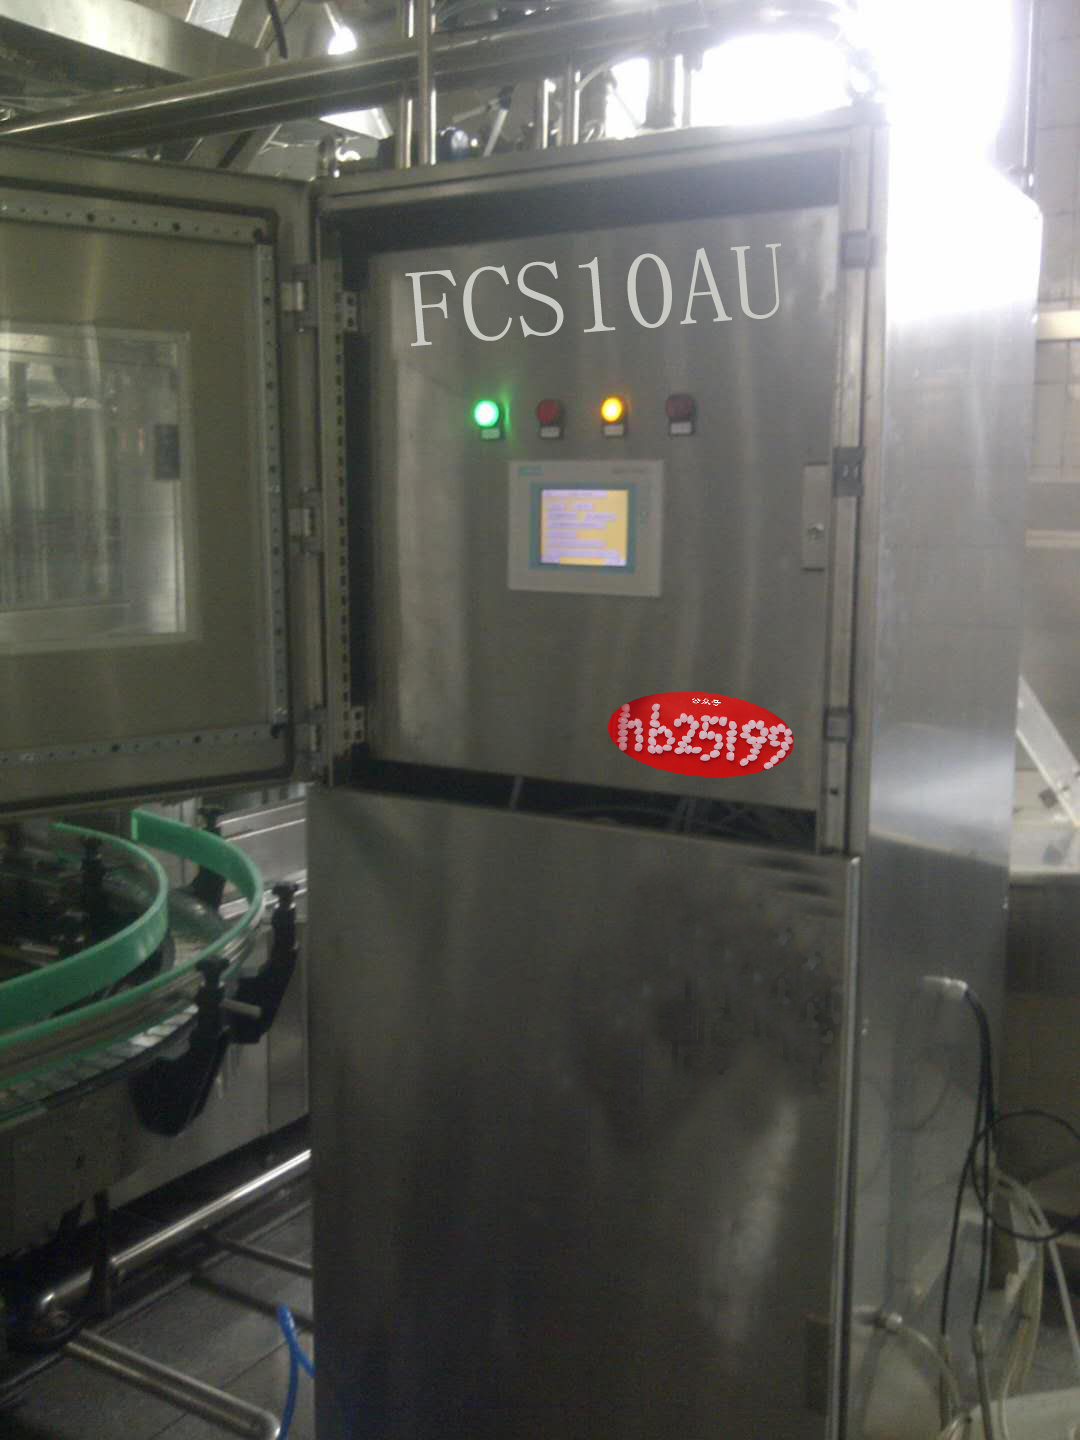 全自动泡沫清洗系统FCS10AU食品车间清洗系统